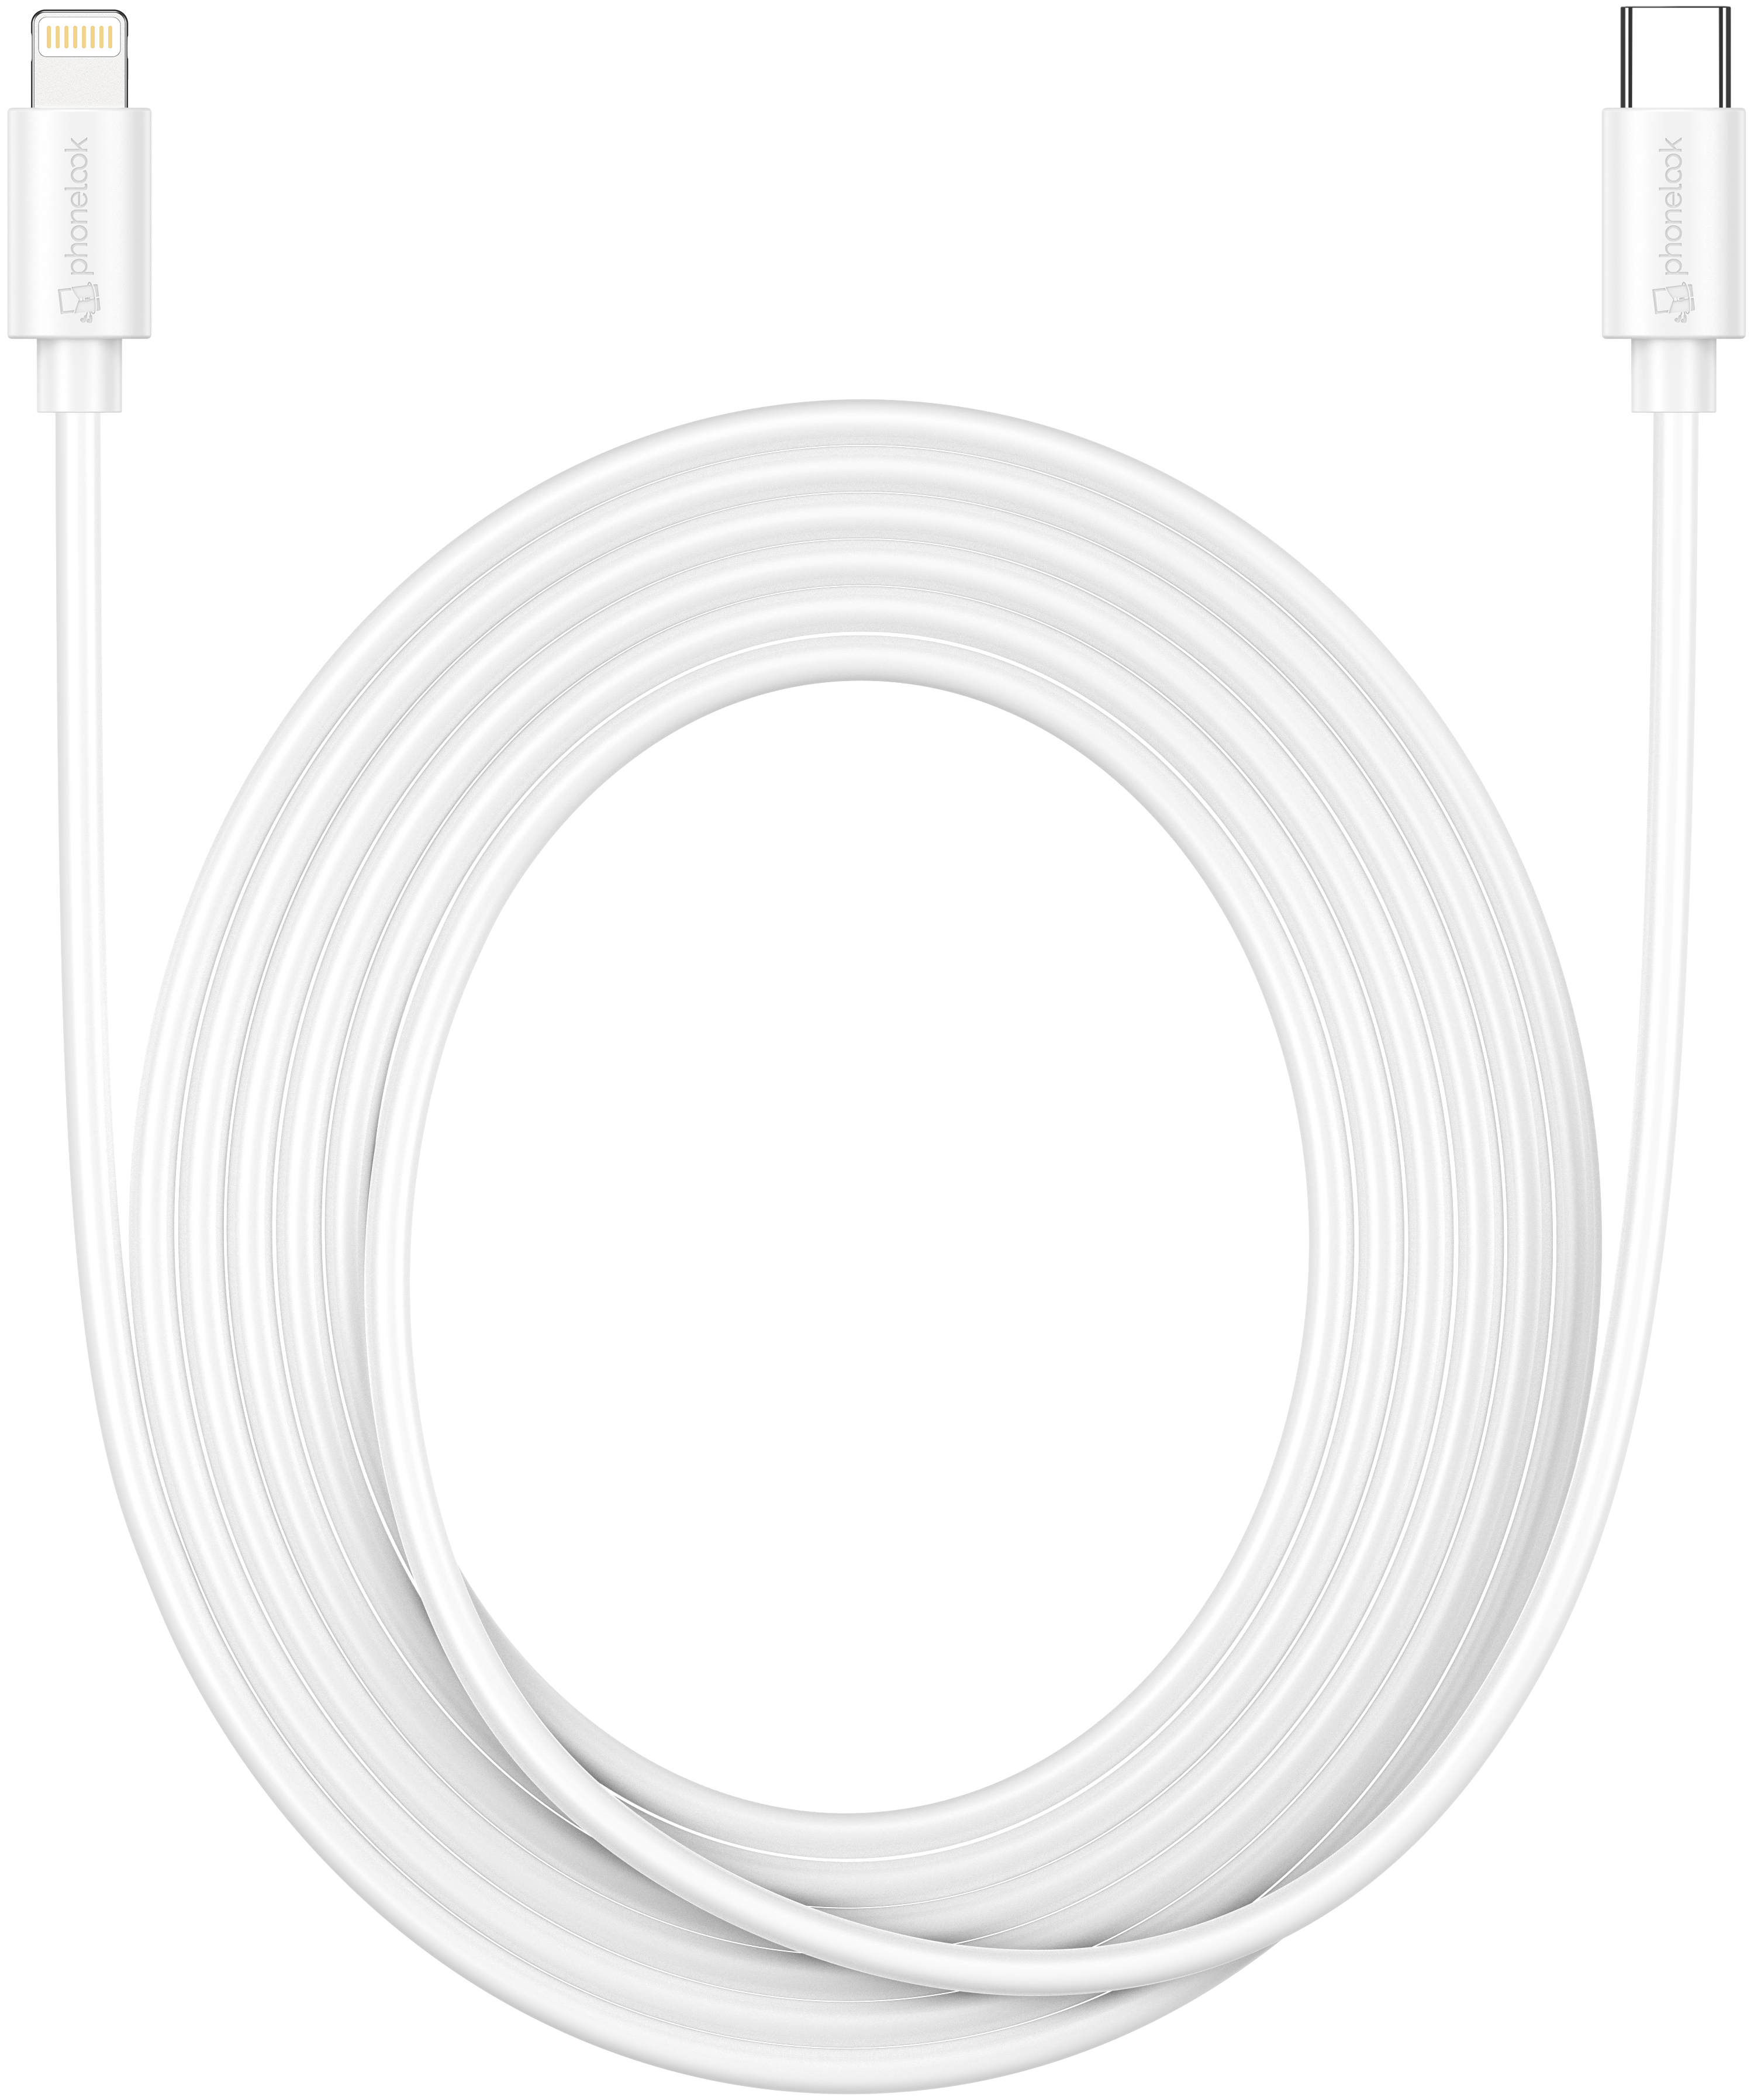 Câble USB - iPhone 4, iPhone 4S, iPad 2 & iPad 3 - Blanc - Chargeur pour  téléphone mobile - Achat & prix